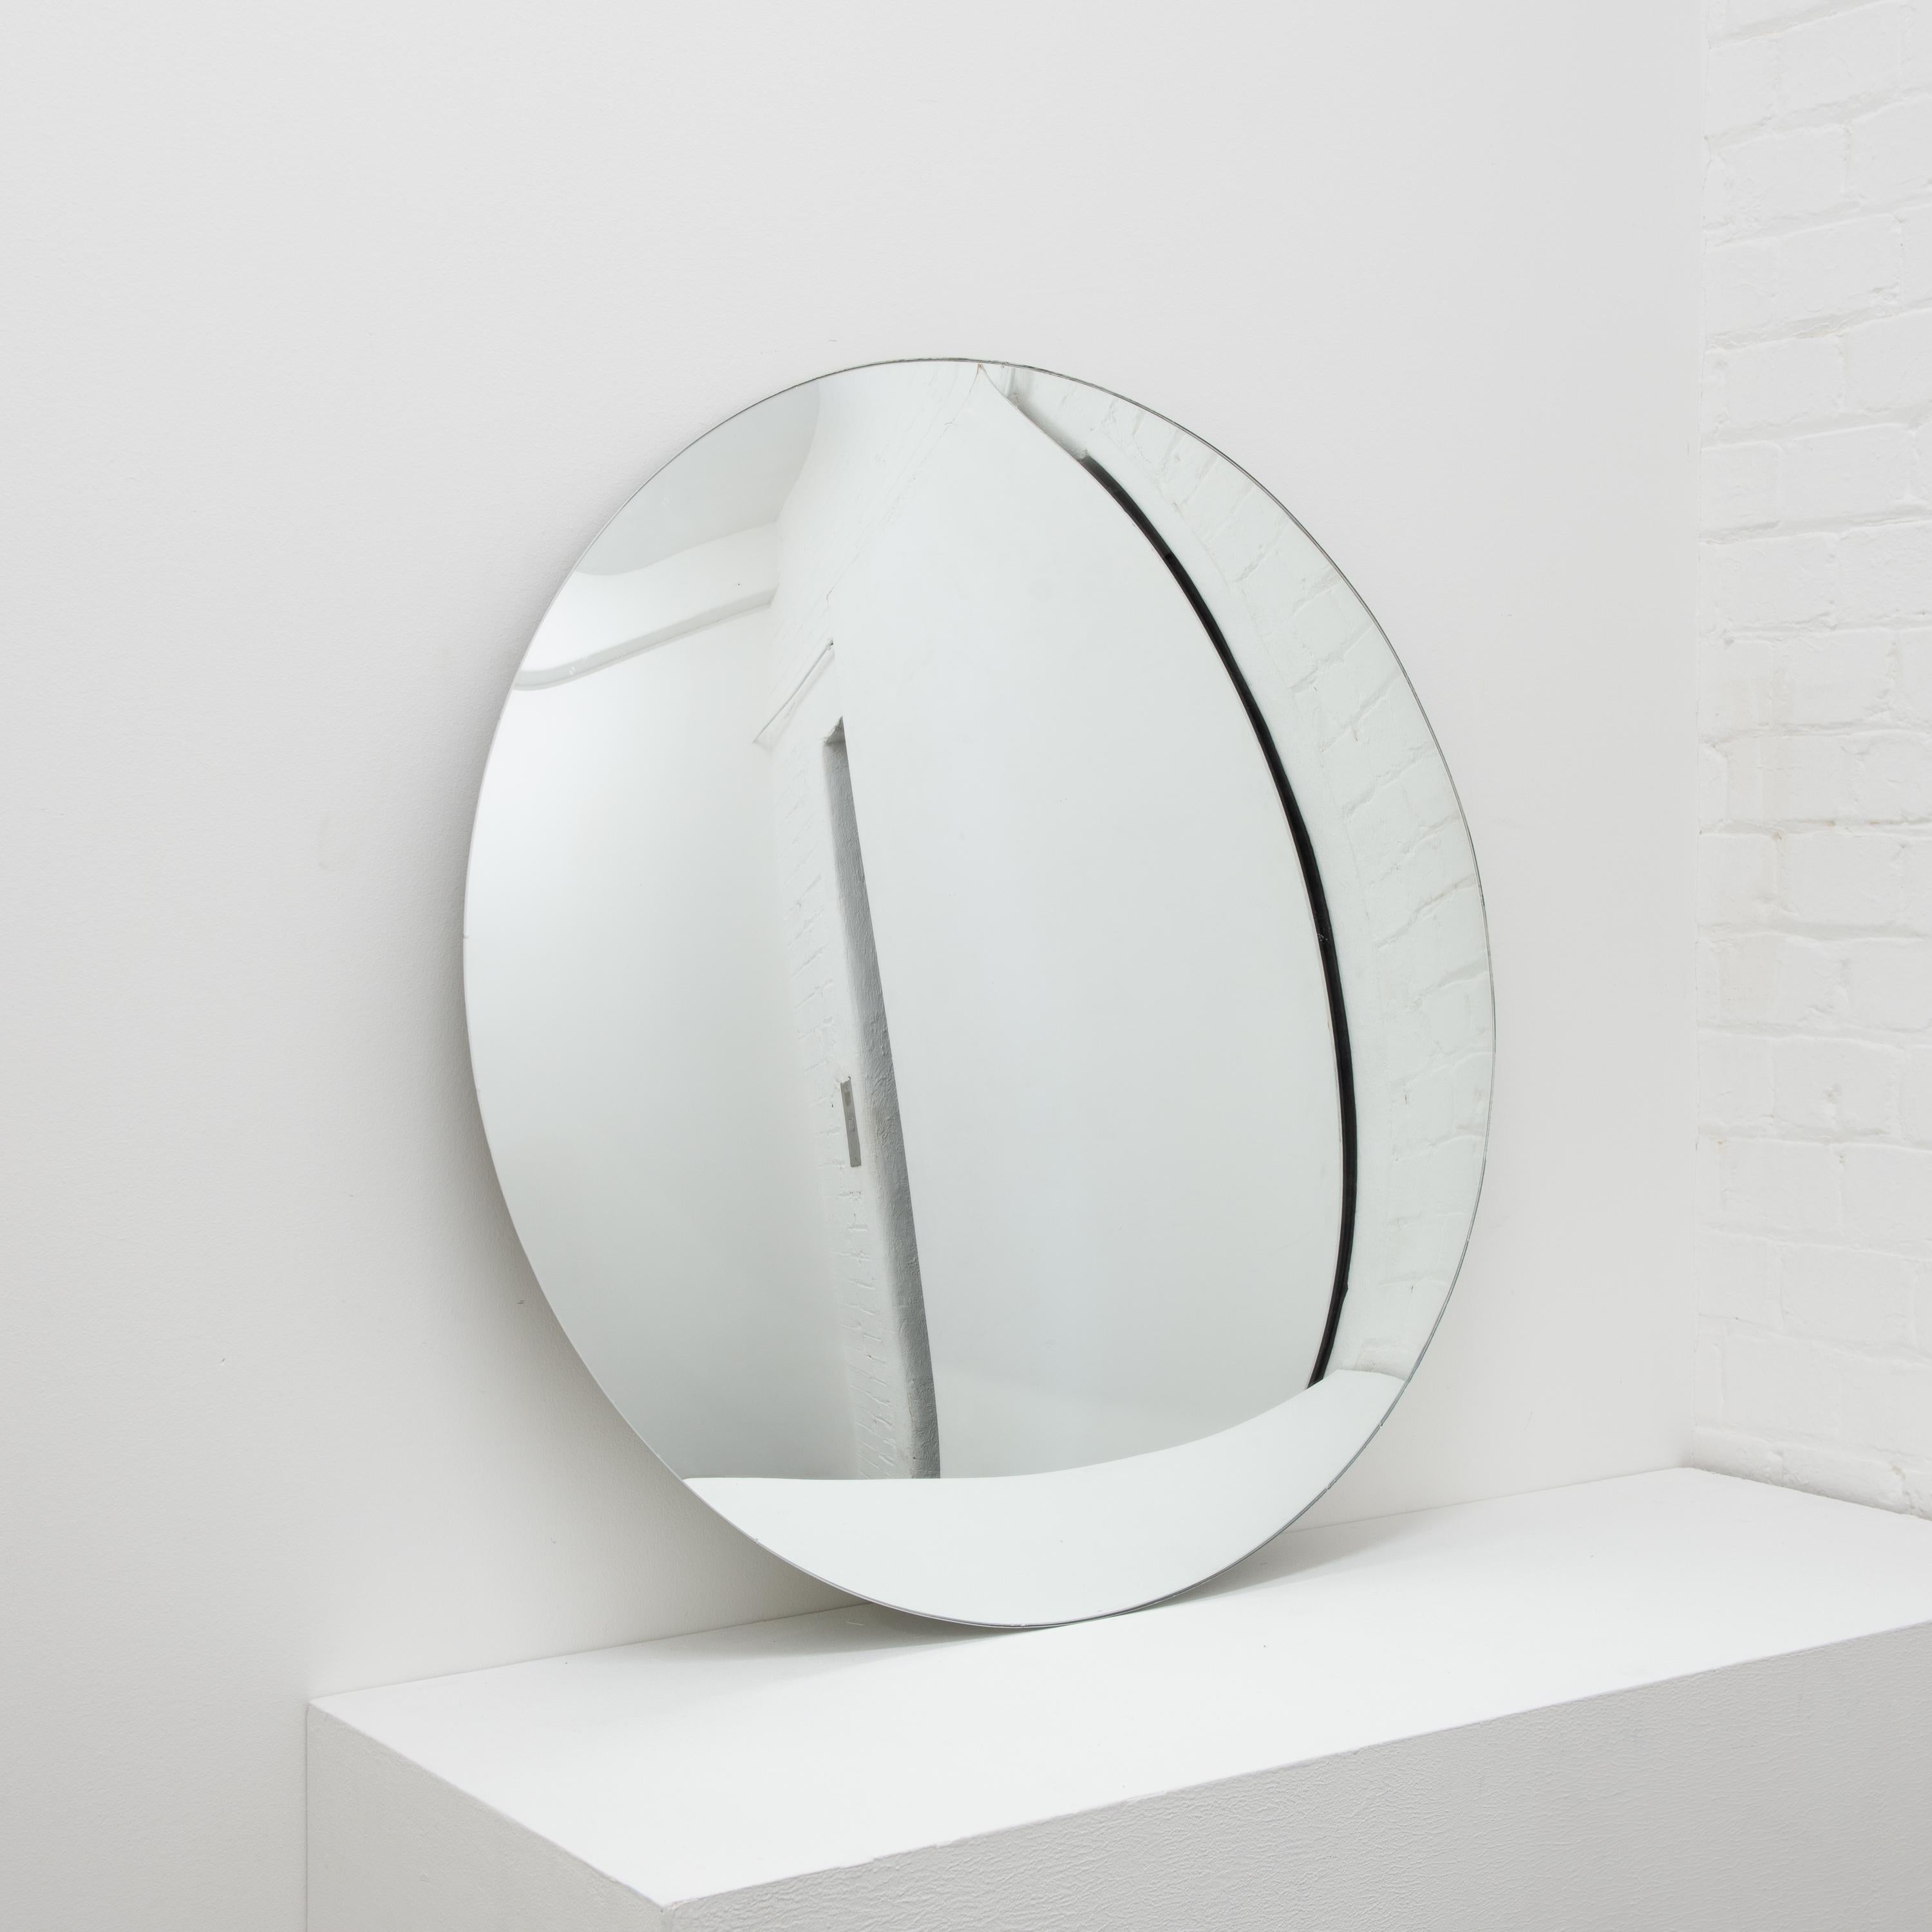 Miroir convexe minimaliste sans cadre.

Chaque miroir convexe Orbis™ est conçu et fabriqué à la main à Londres, au Royaume-Uni. De légères variations de taille et des imperfections sur les bords et les finitions de surface sont des caractéristiques